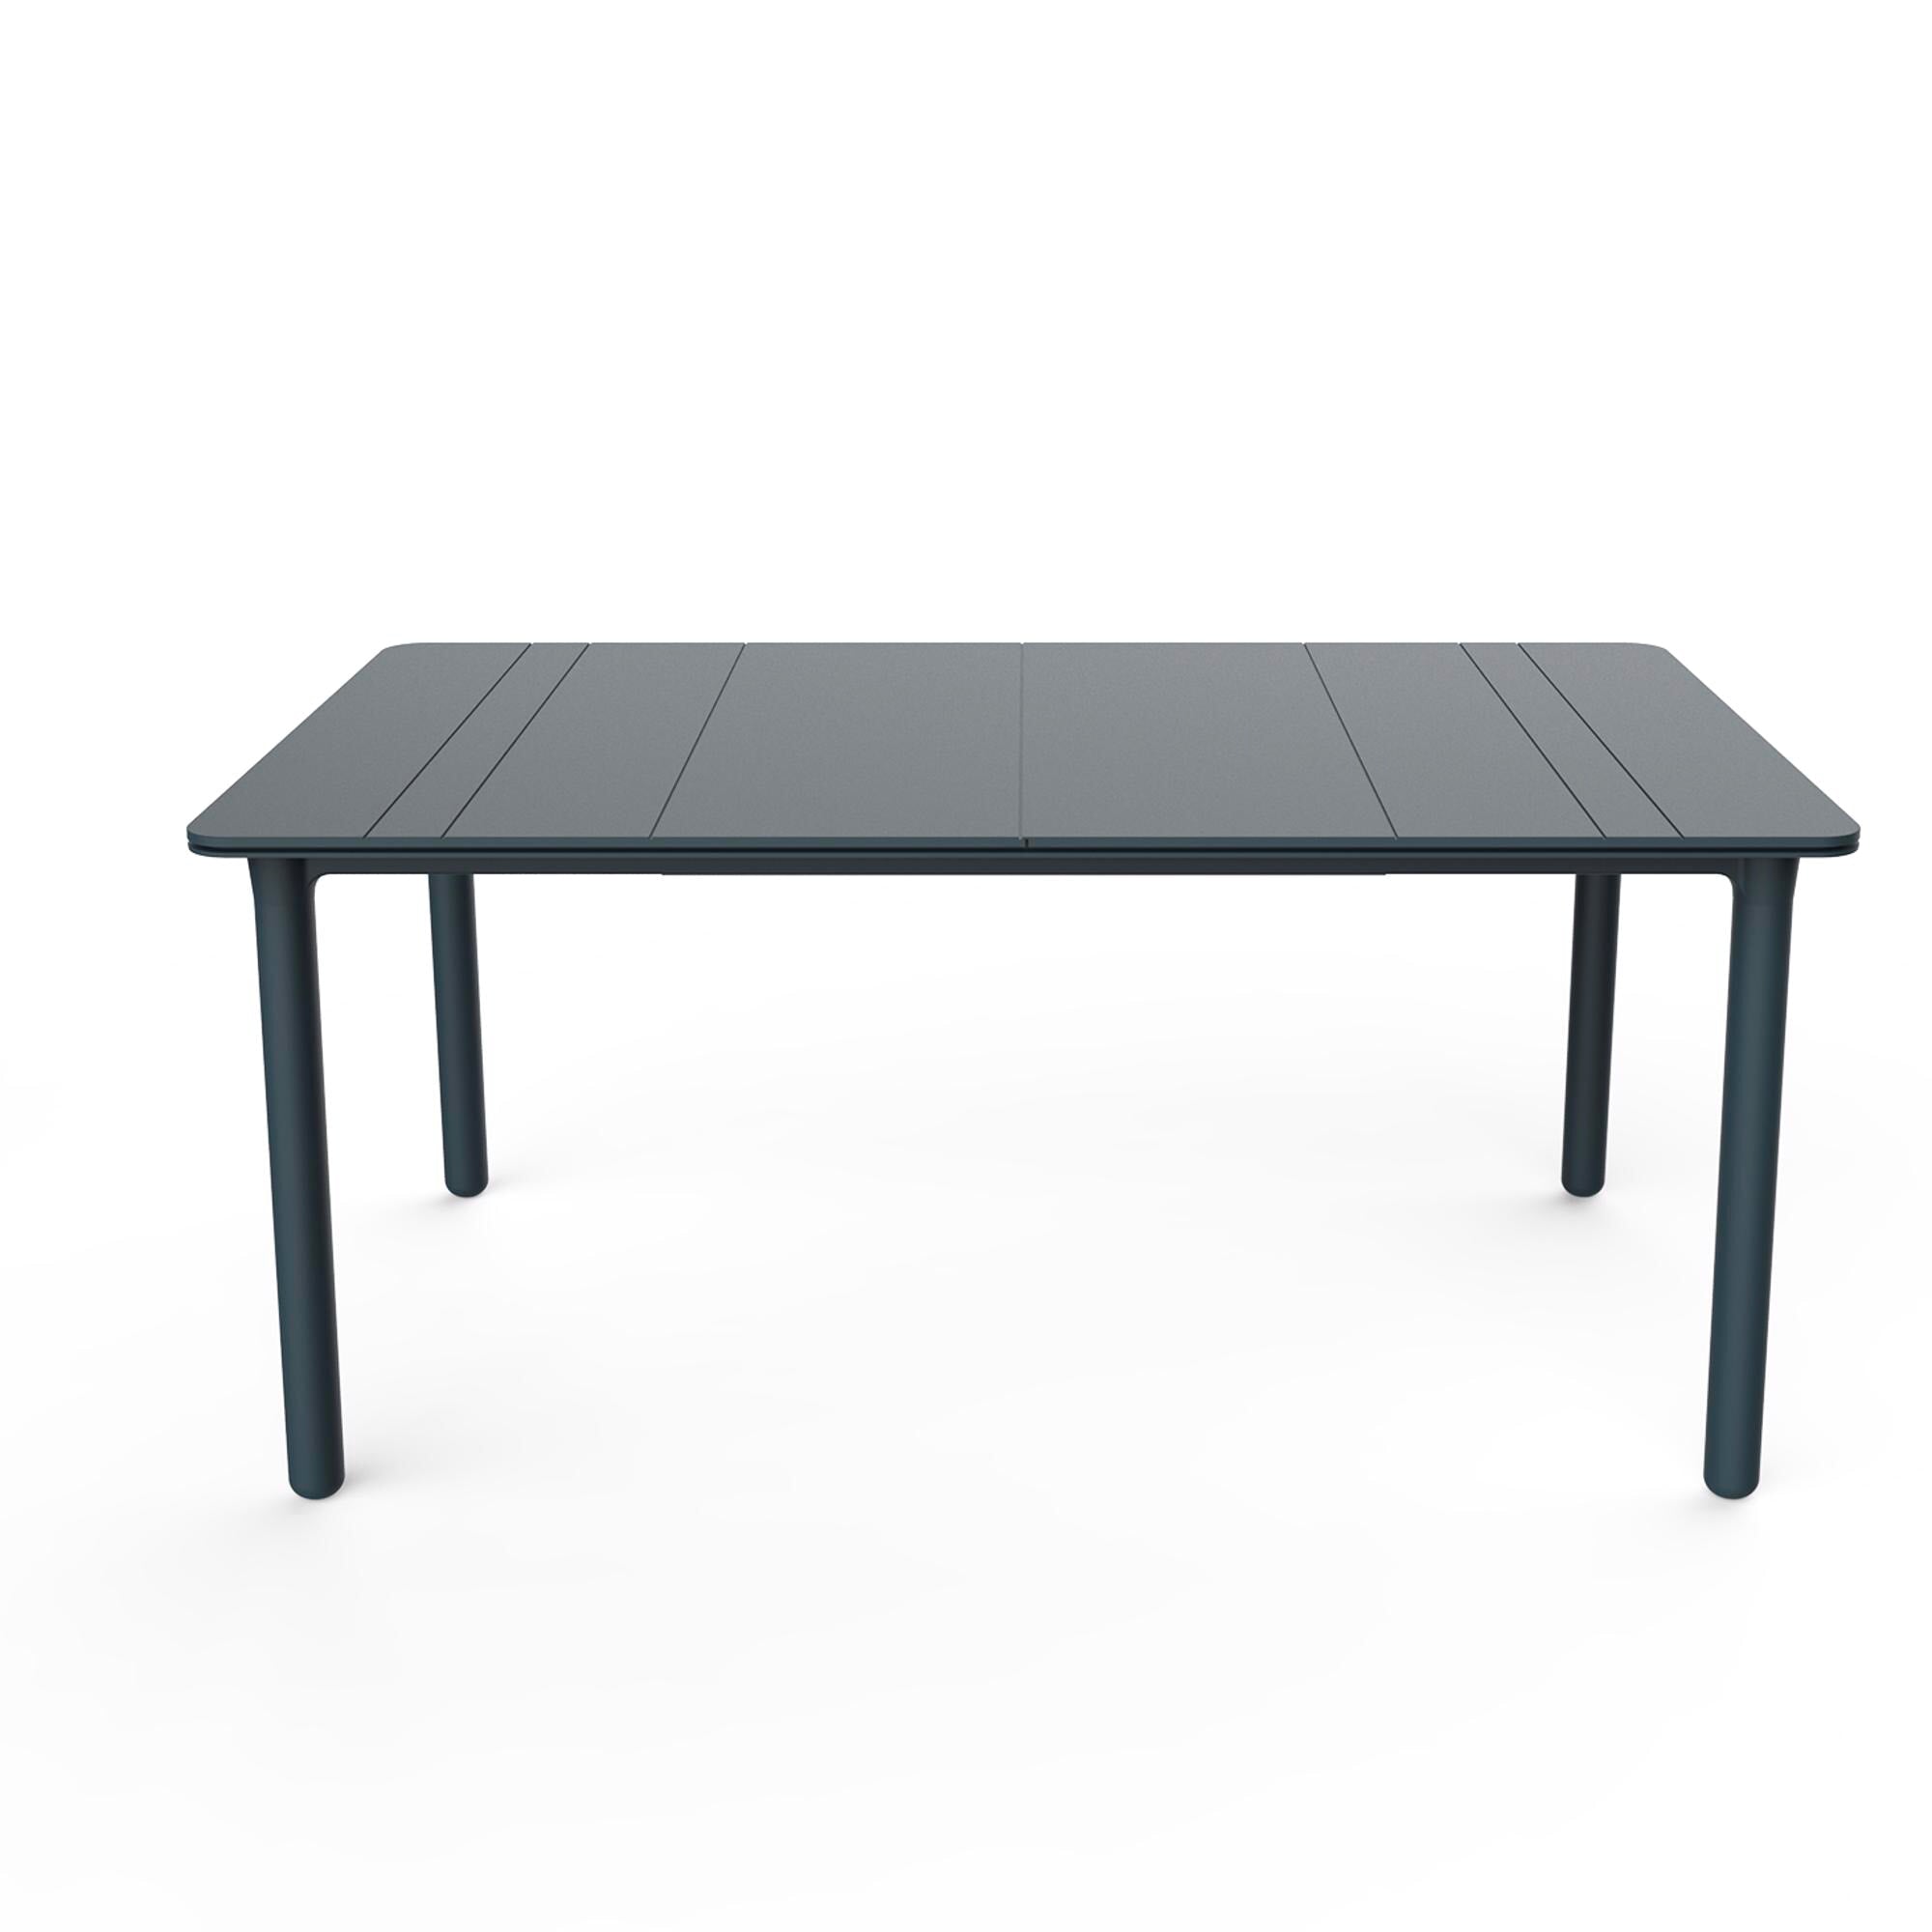 Garbar noa rectangular table indoors, outdoors 160x90